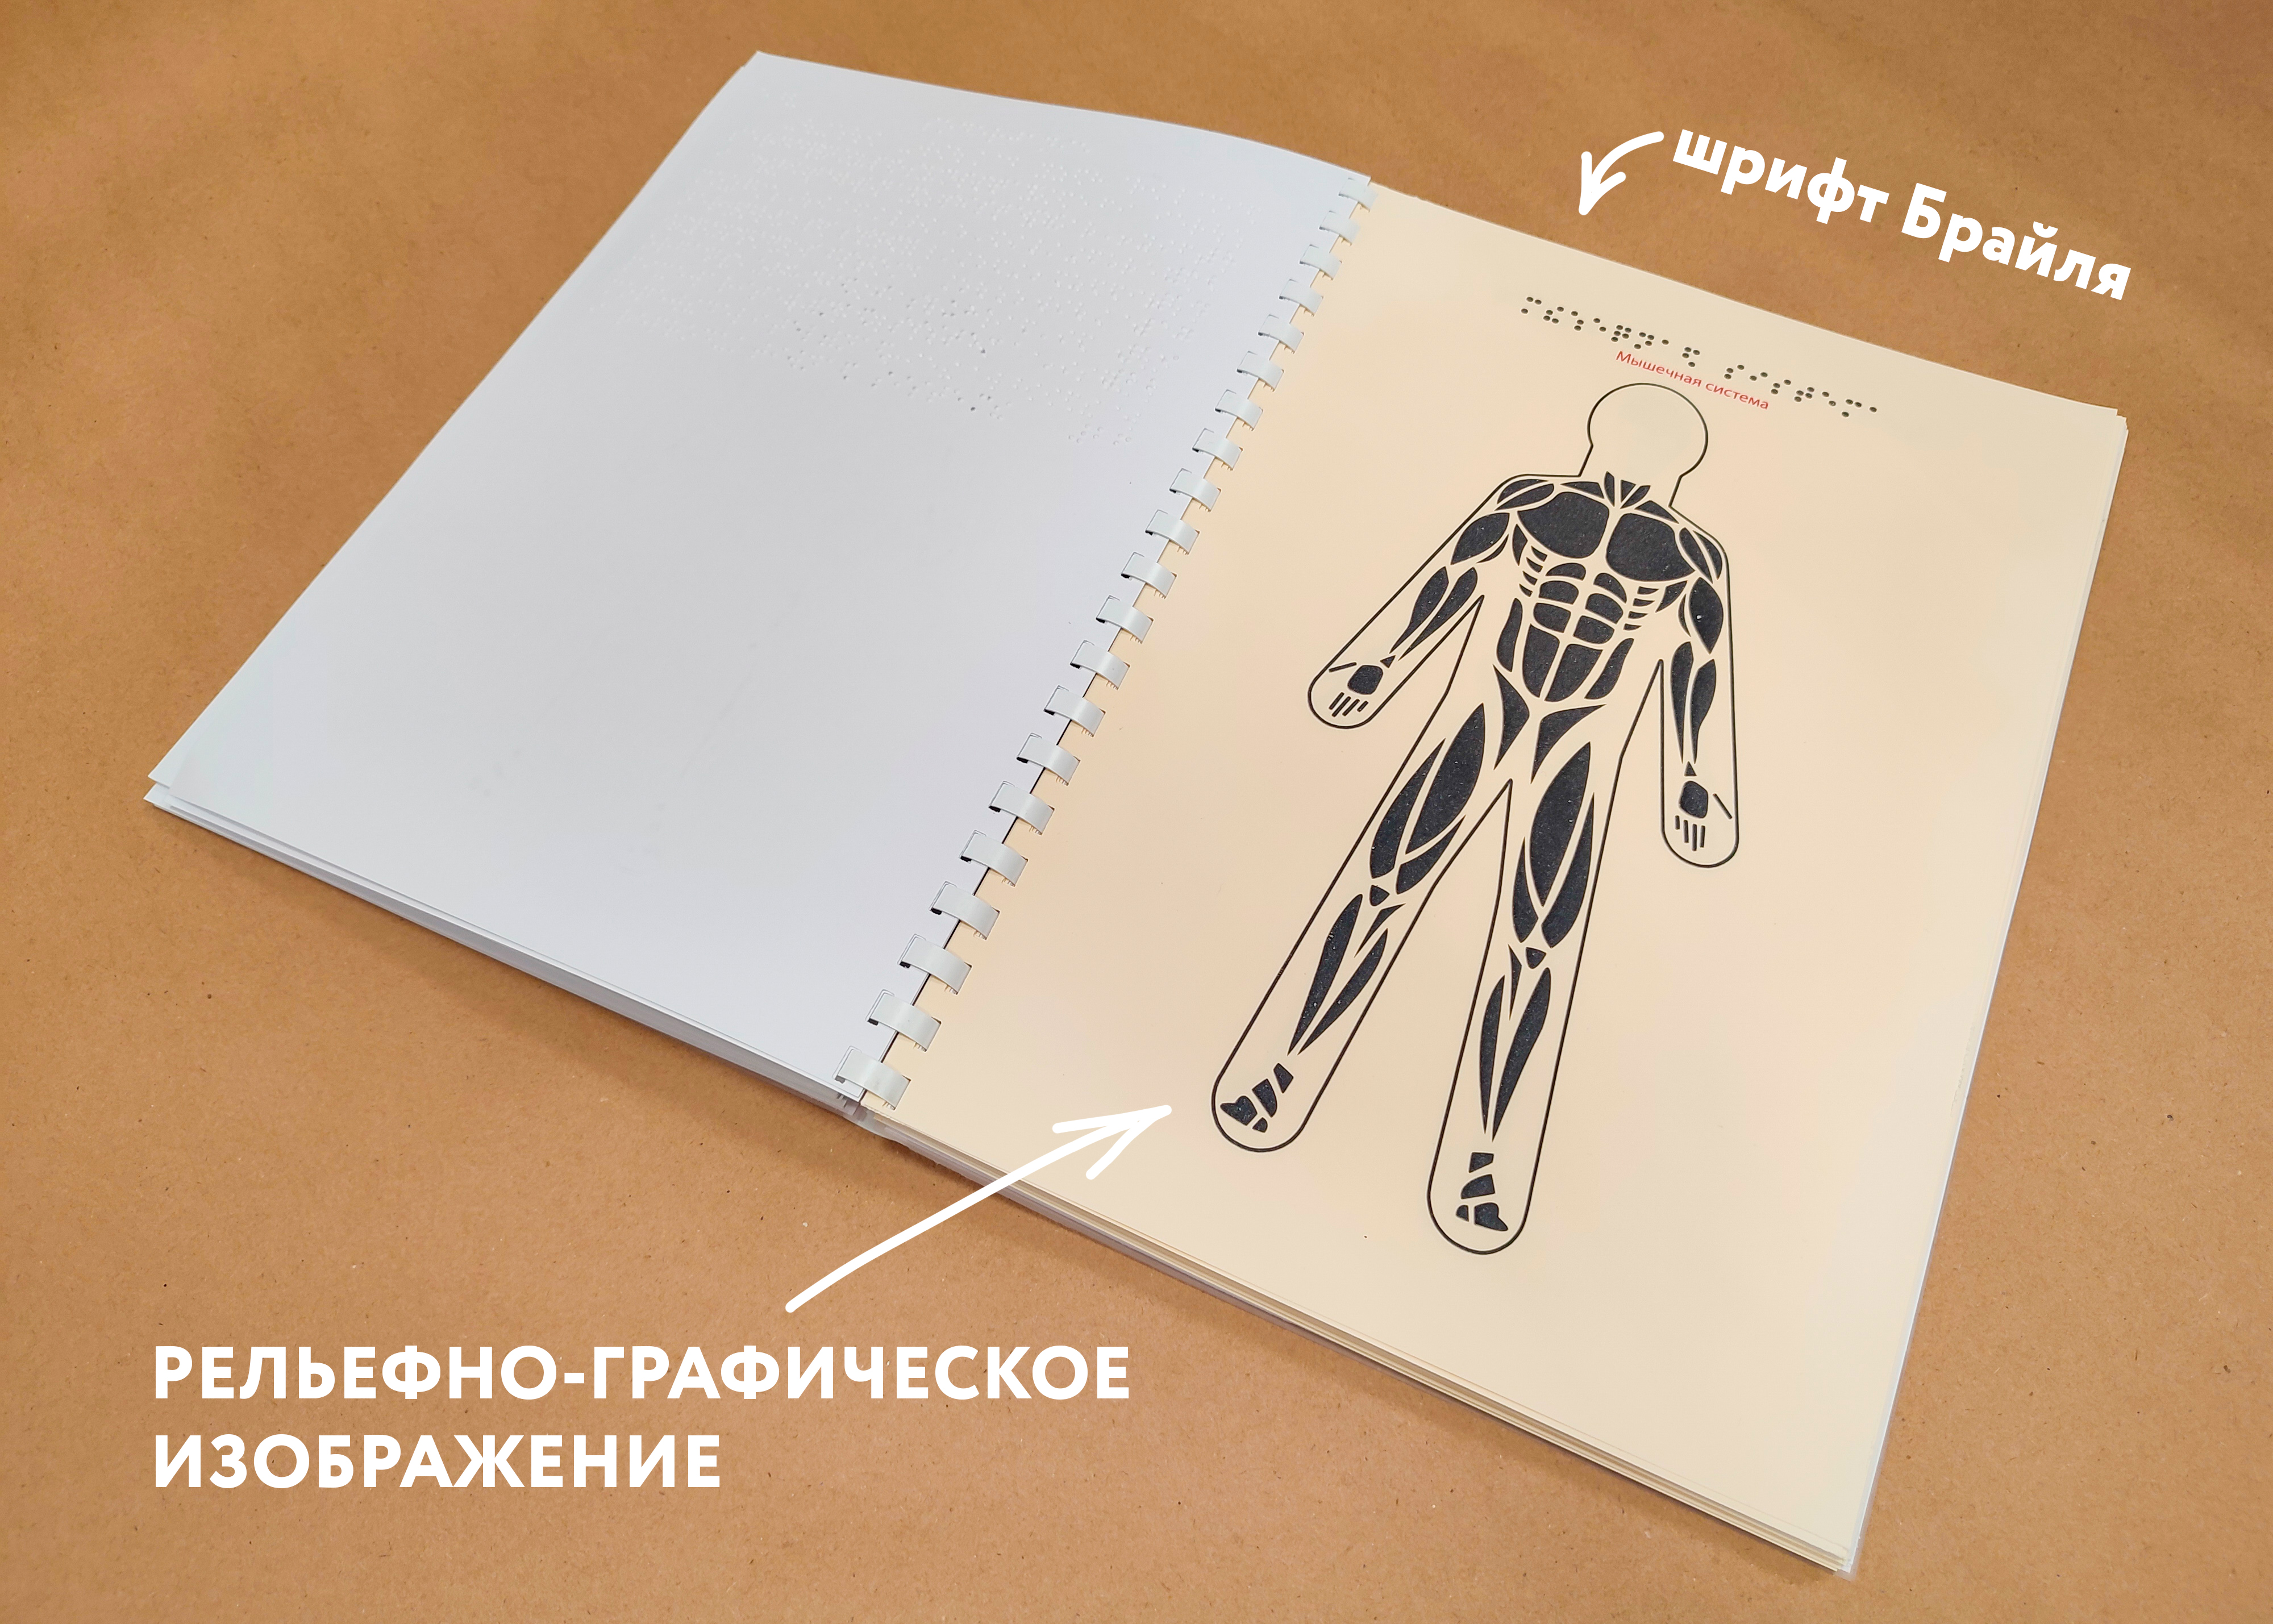 Одна из страниц издания с изображением мышечной системы человека в рельефной графике